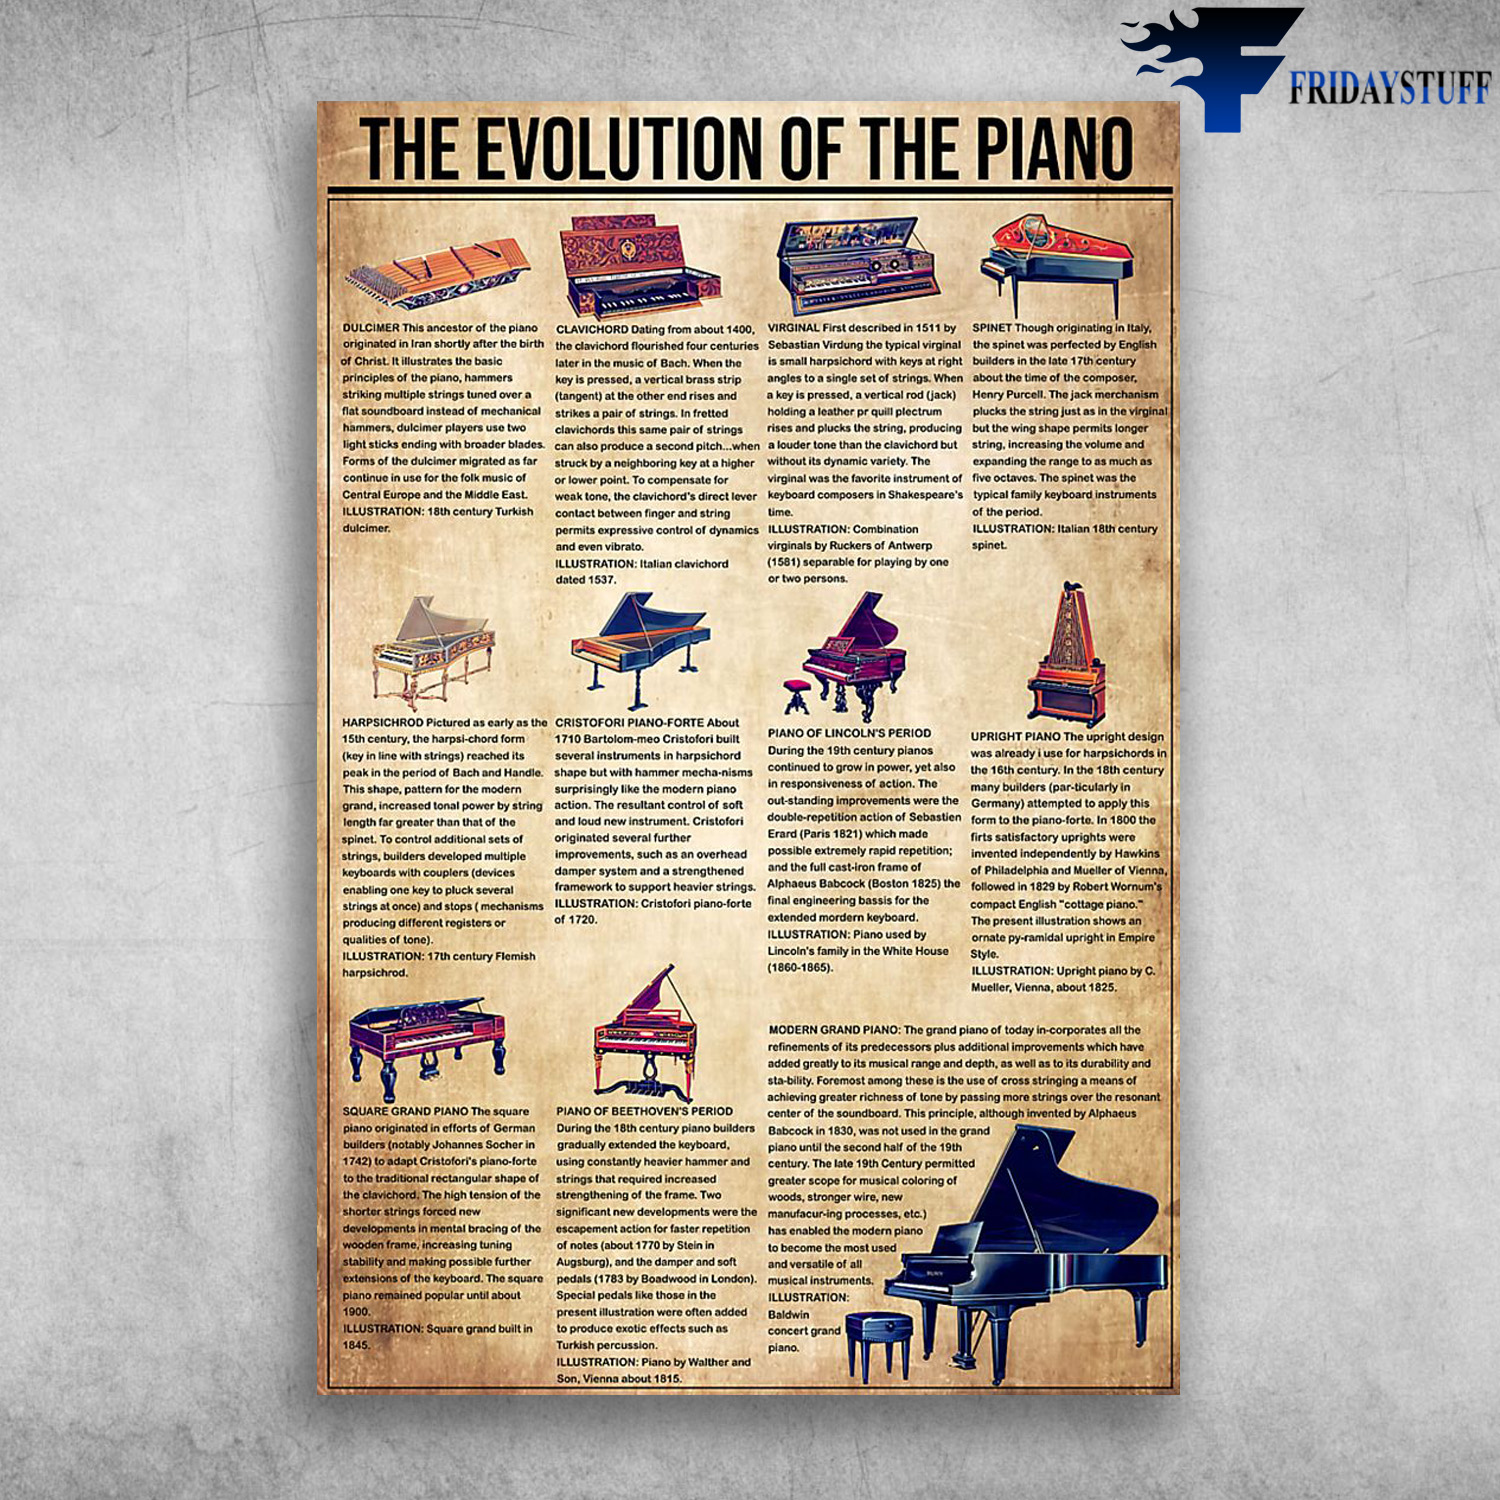 The Evolution Of The Piano Upright Piano Square Grand Piano